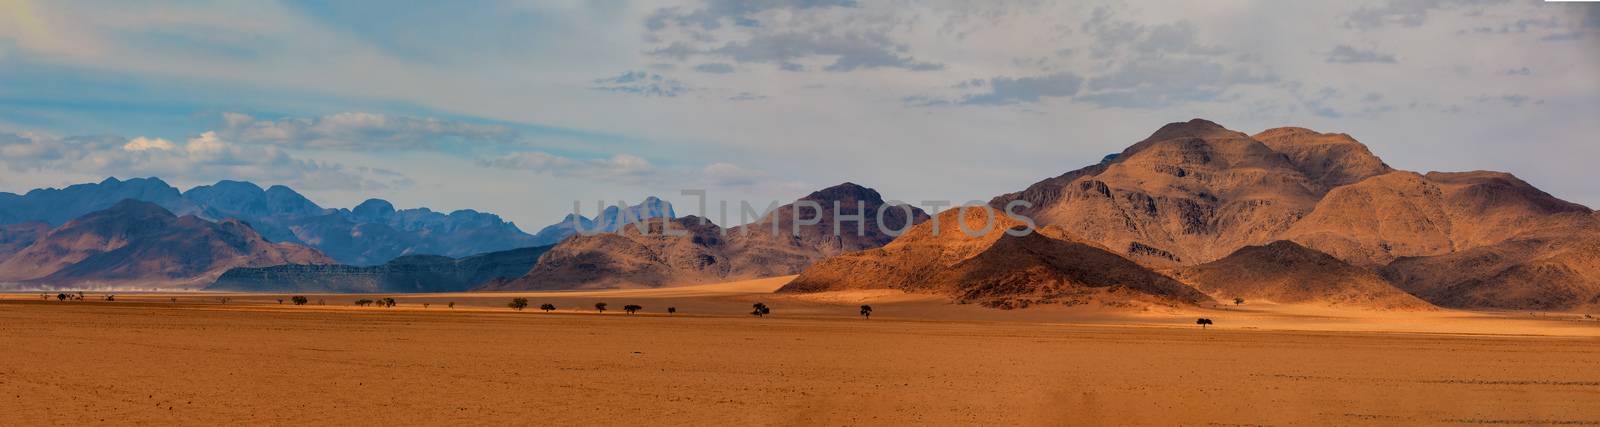 Namib desert, Namibia Africa landscape by artush